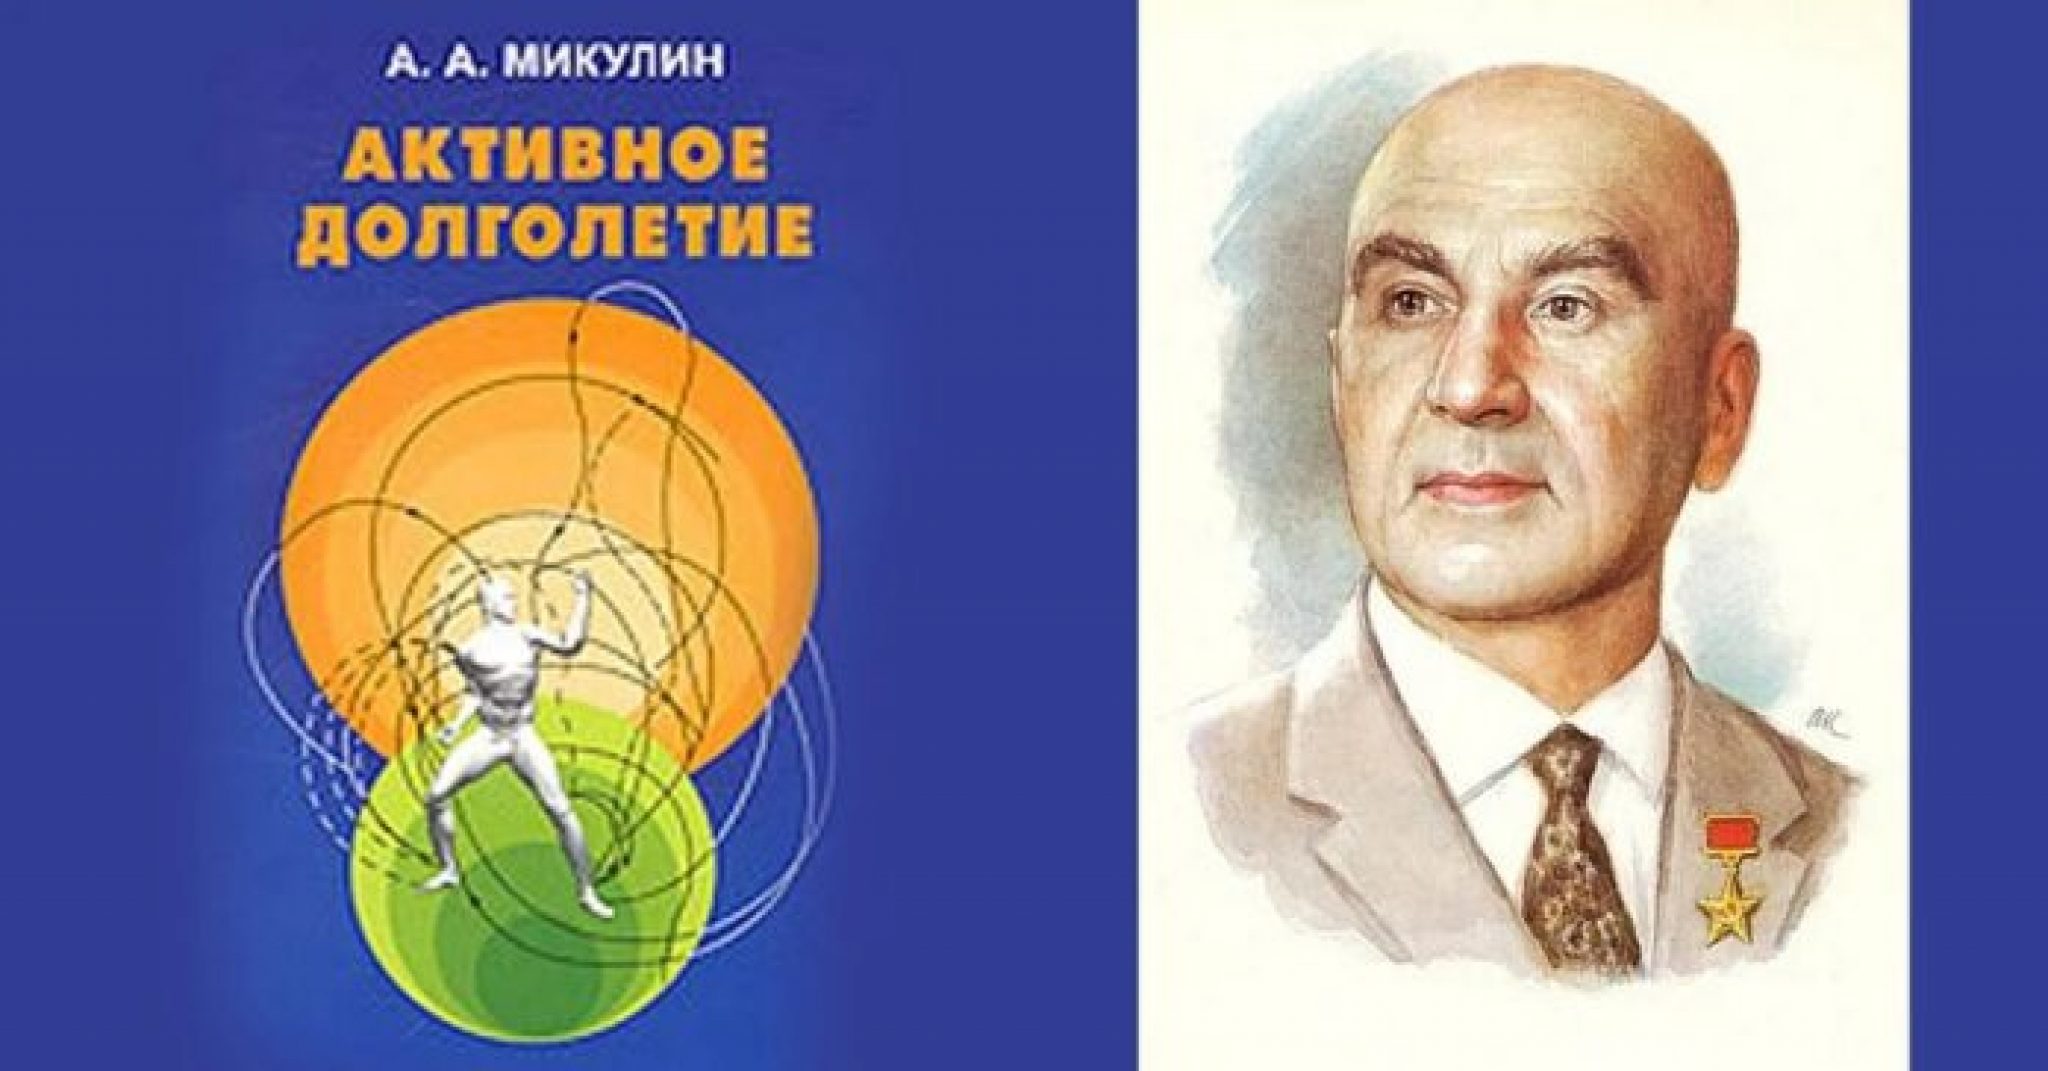 Книга активное долголетие. Активное долголетие книга Академика Микулина. Александрович Микулин (1895-1985).